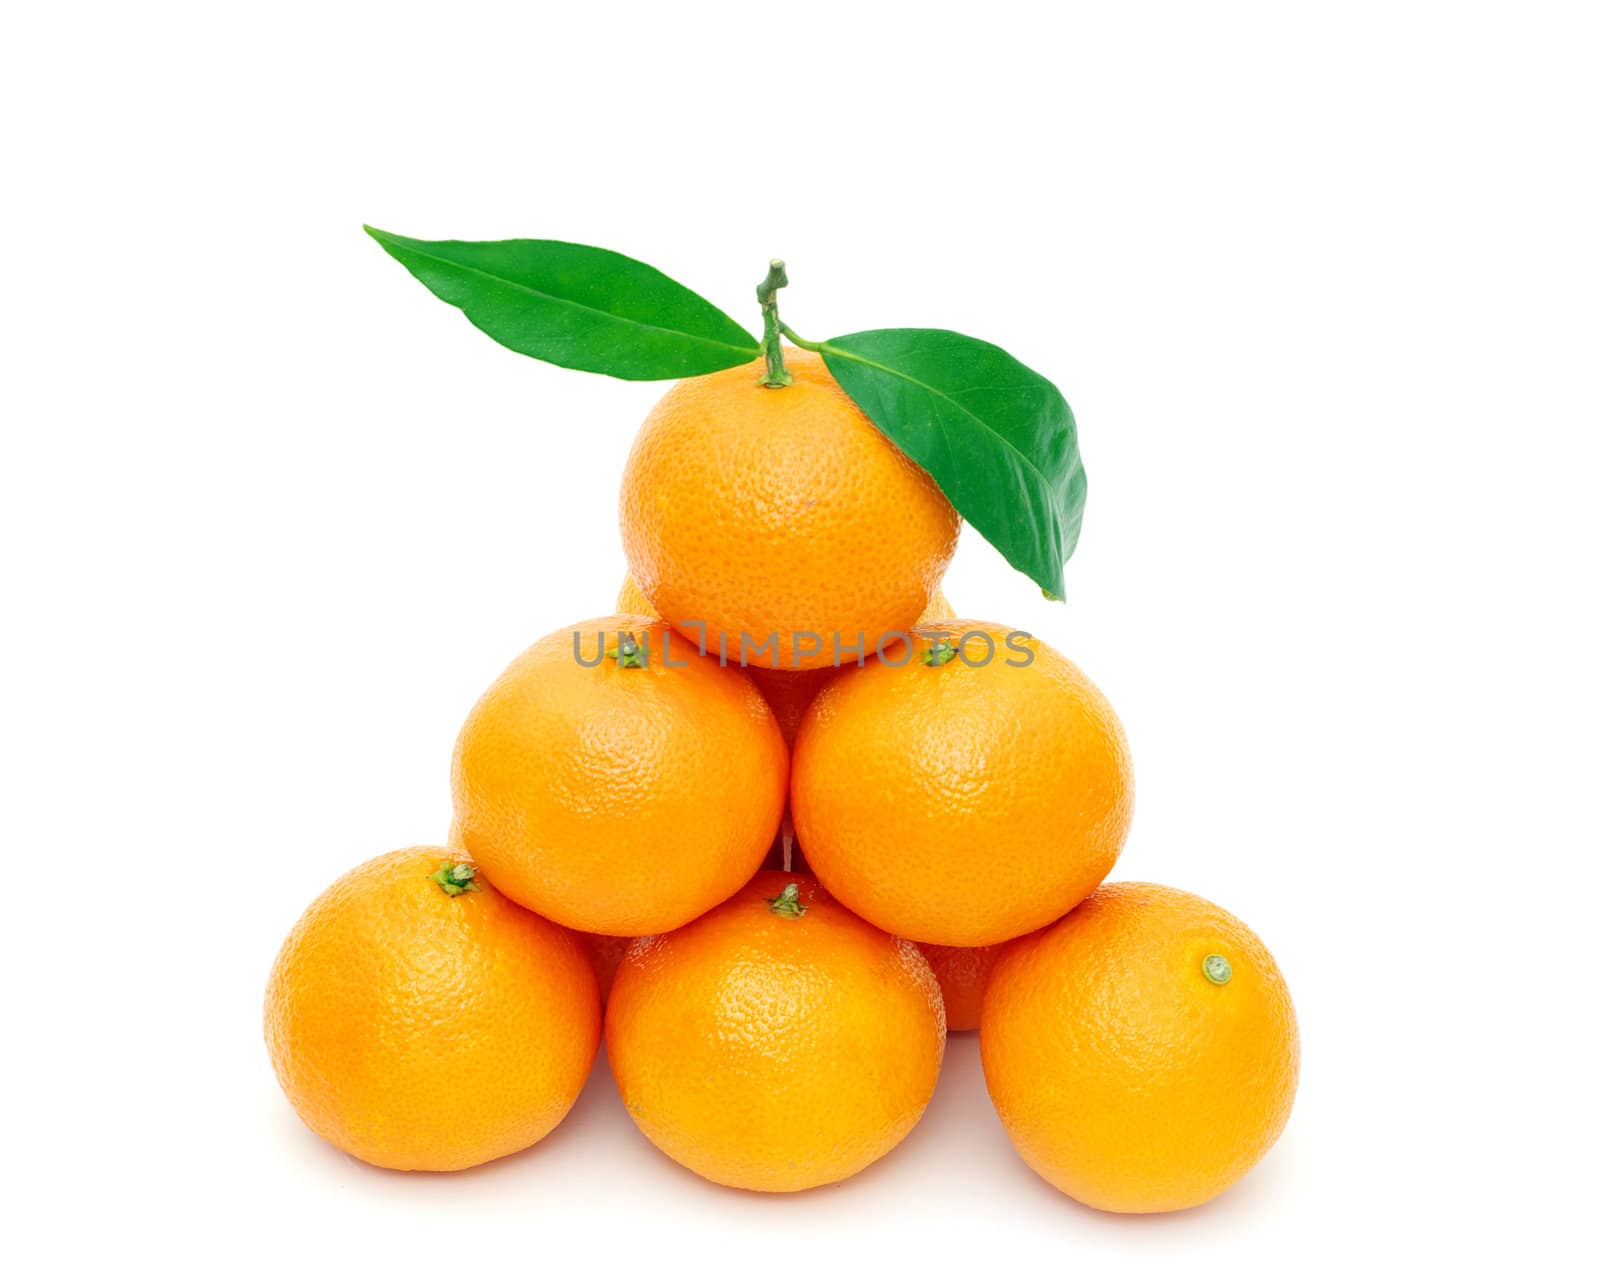  tangerine  by Pakhnyushchyy